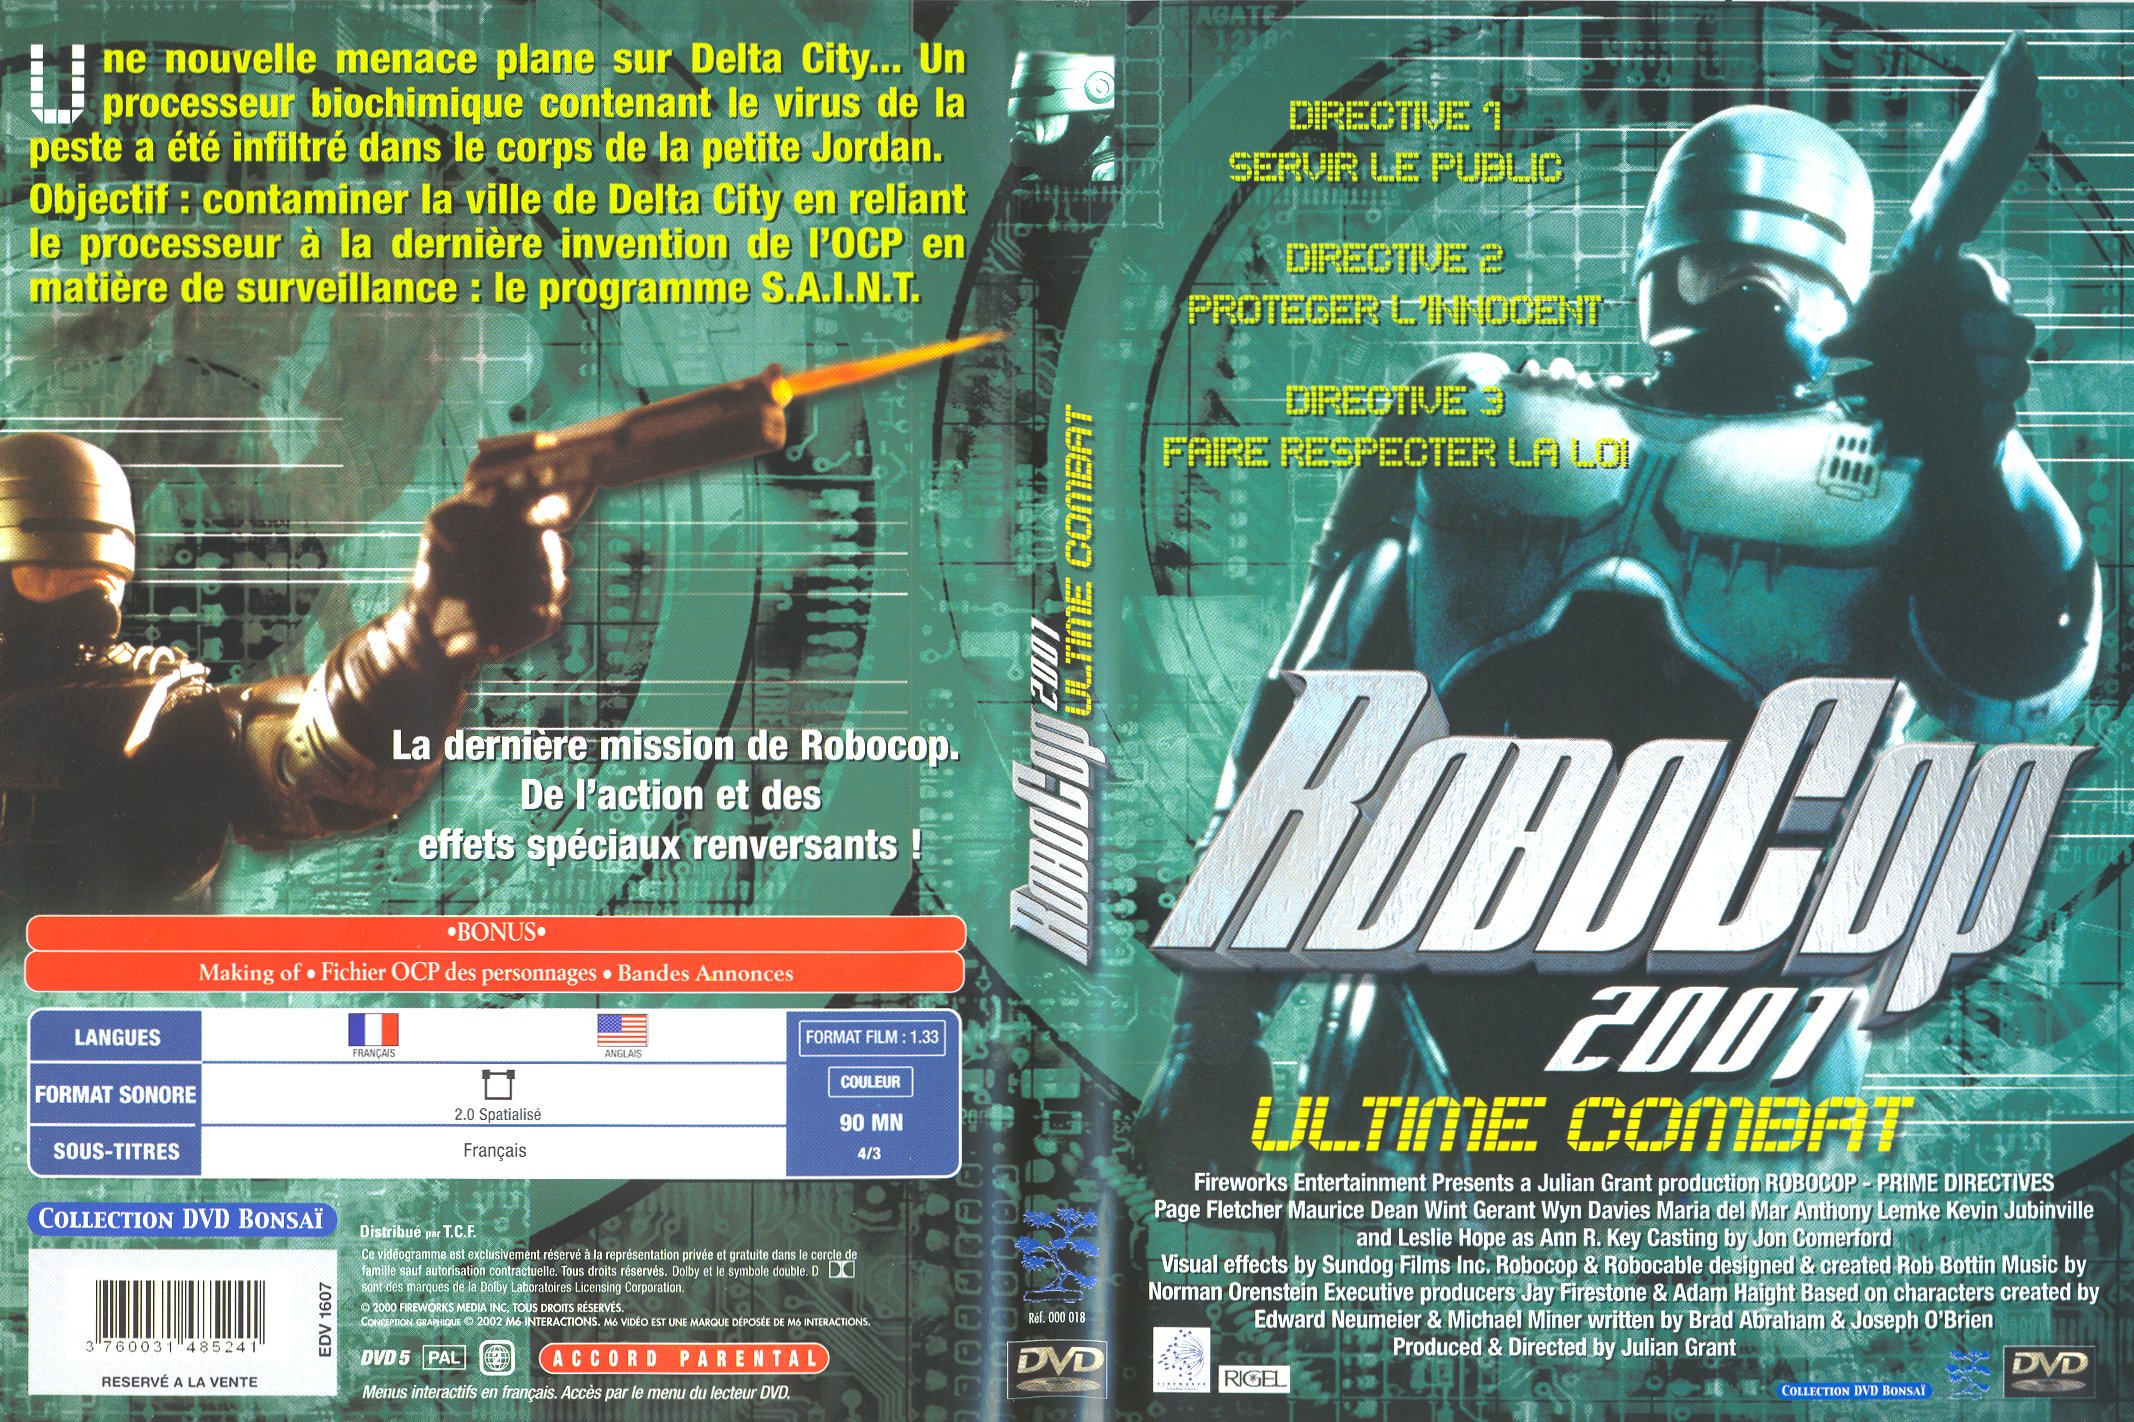 Jaquette DVD Robocop 2001 - Ultime combat